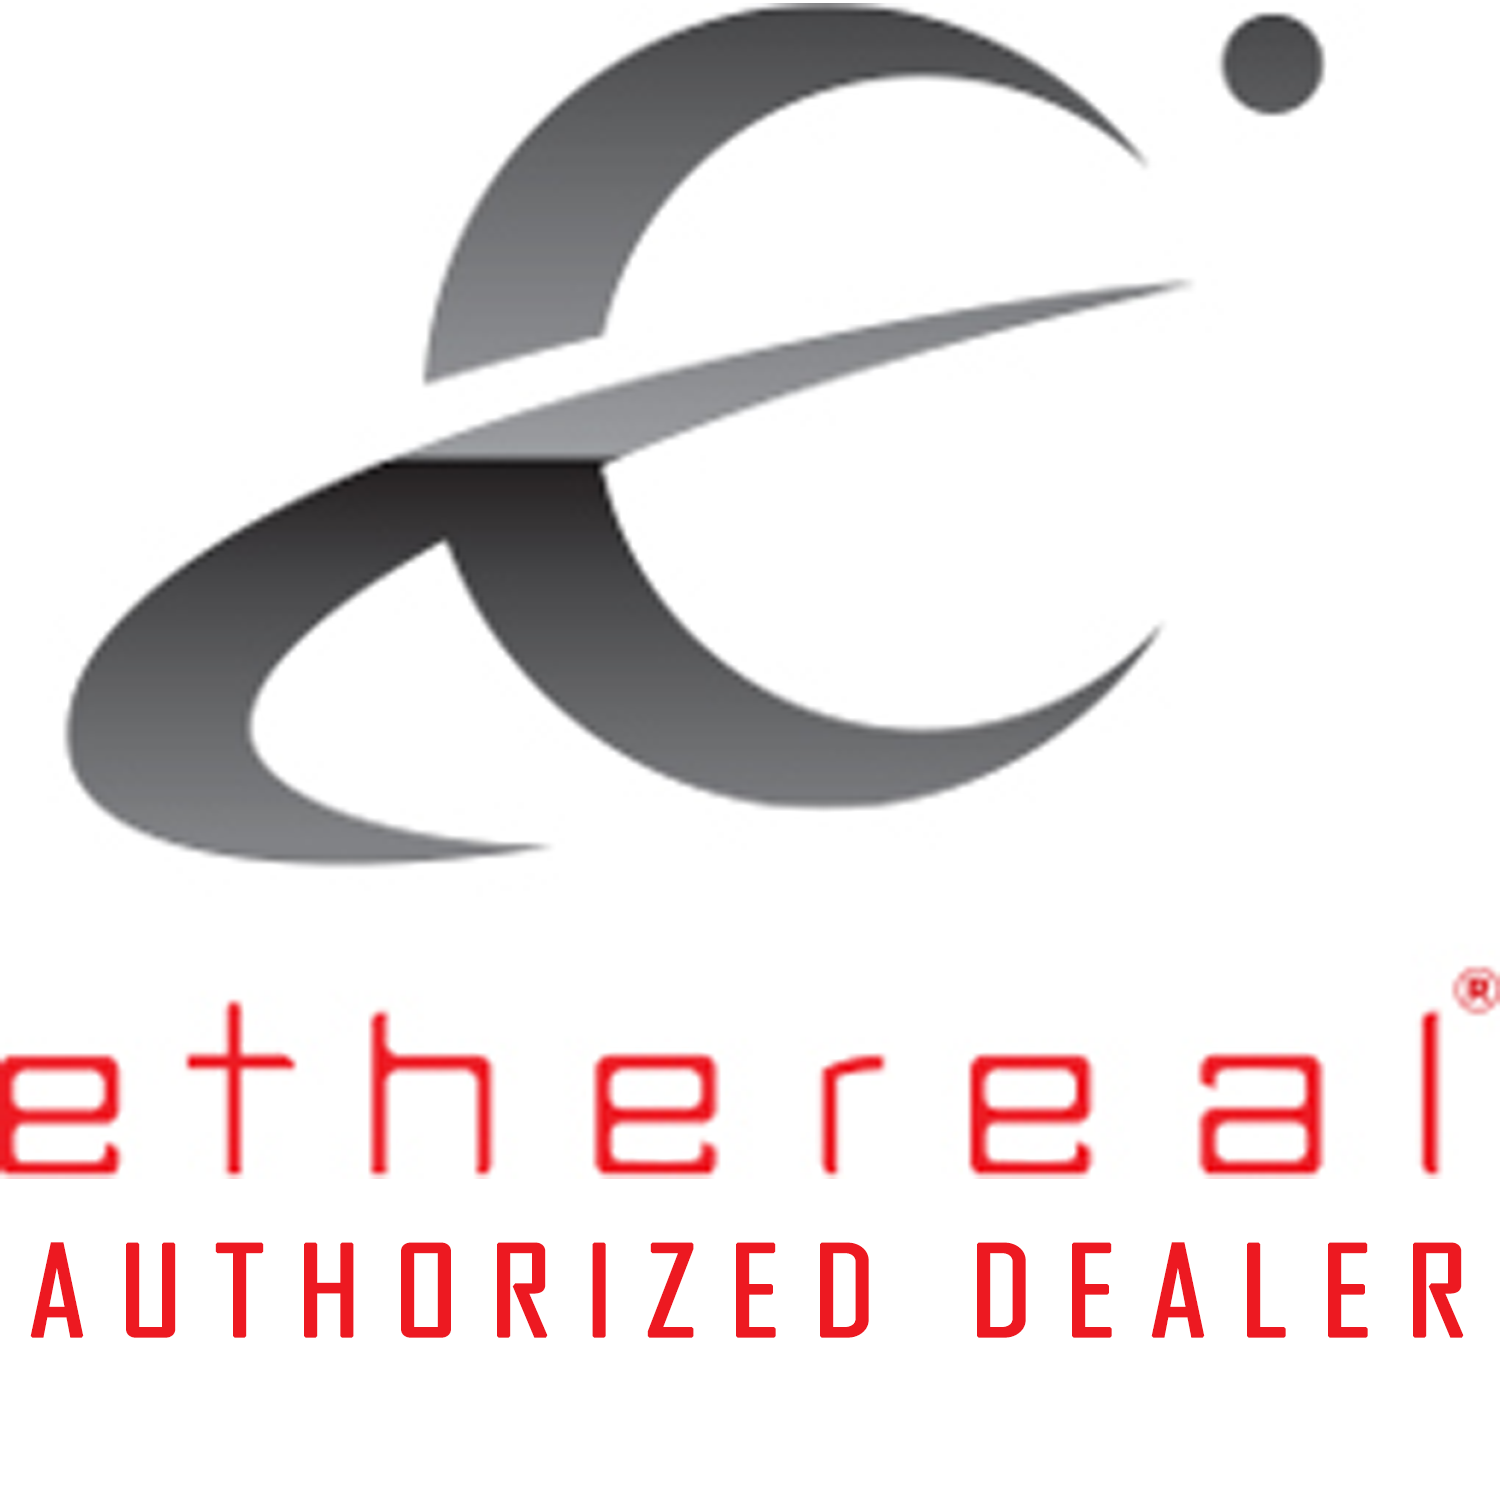 ETHEREAL Dealer